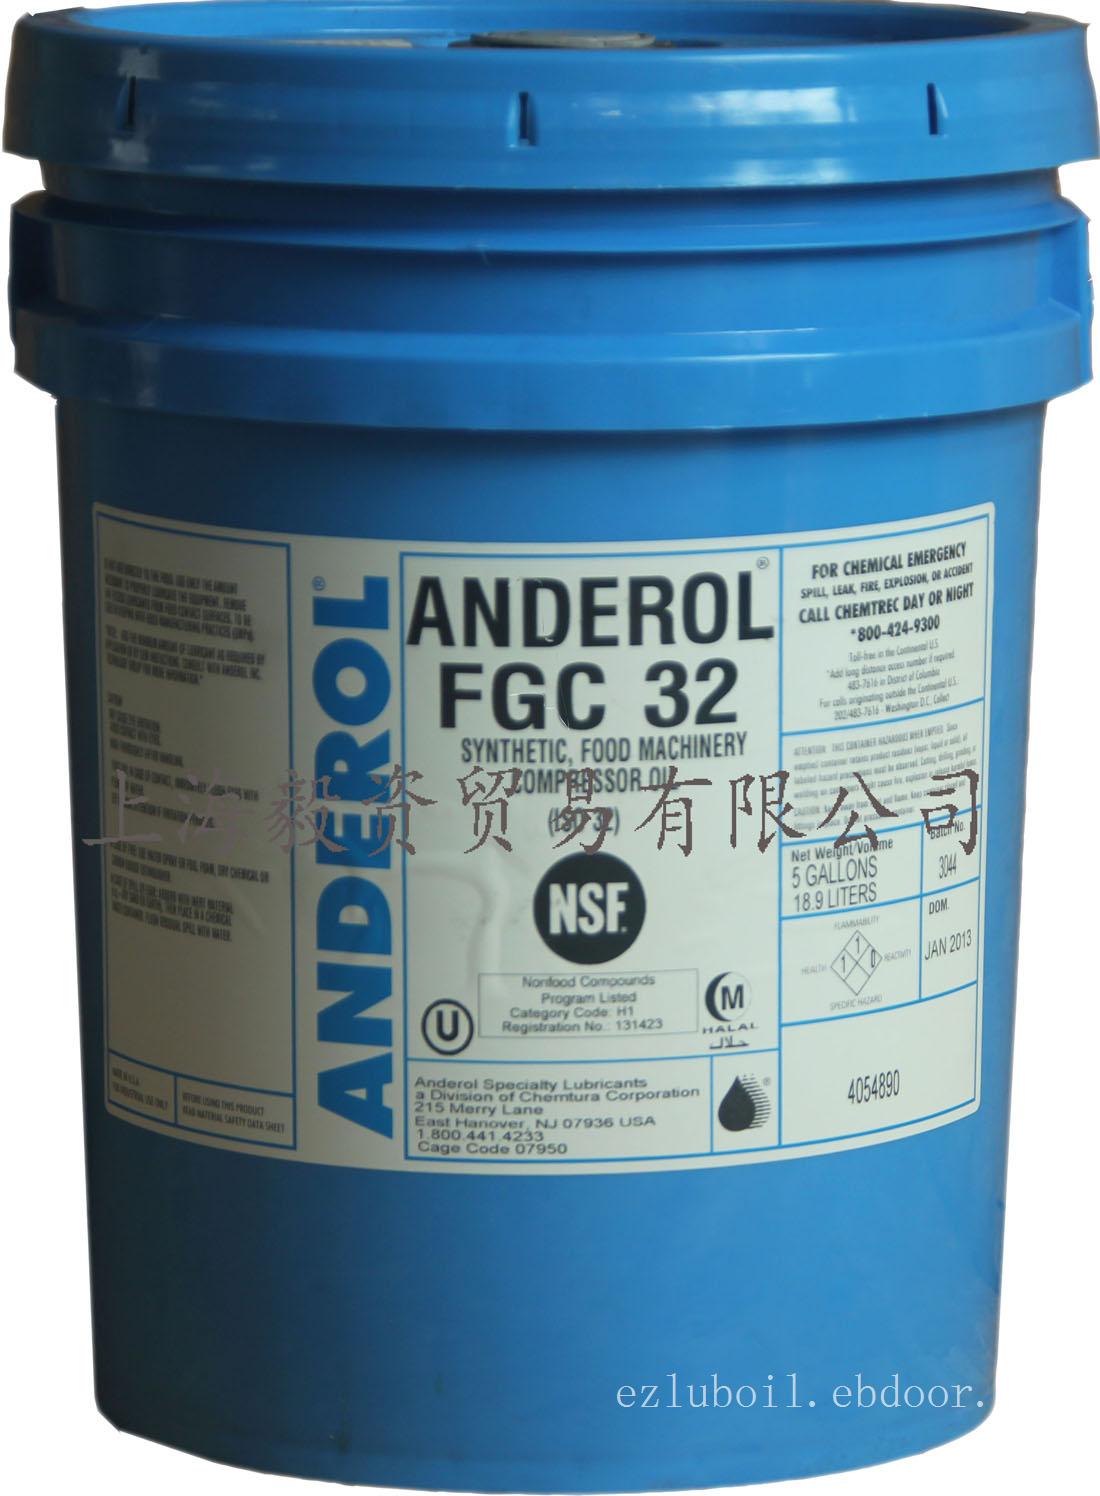 ANDEROL FGC系列安德鲁全合成食品级压缩机油/安德鲁食品级润滑油/供应食品级润滑油/上海毅资供应食品级润滑